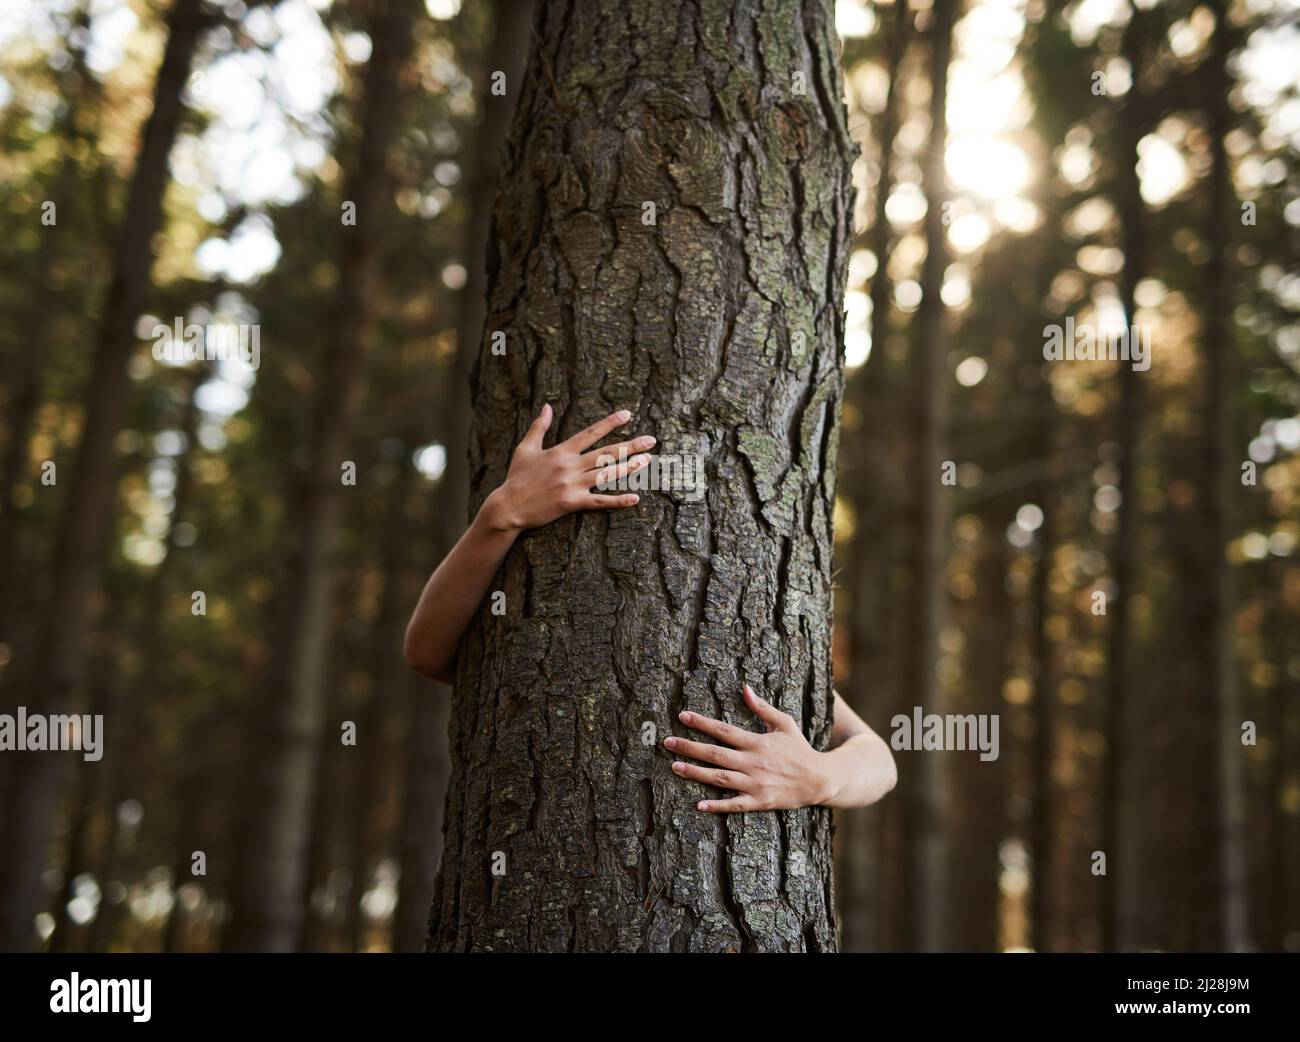 Les arbres méritent aussi l'amour. Photo d'une jeune femme non identifiable embrassant un arbre dans la forêt. Banque D'Images